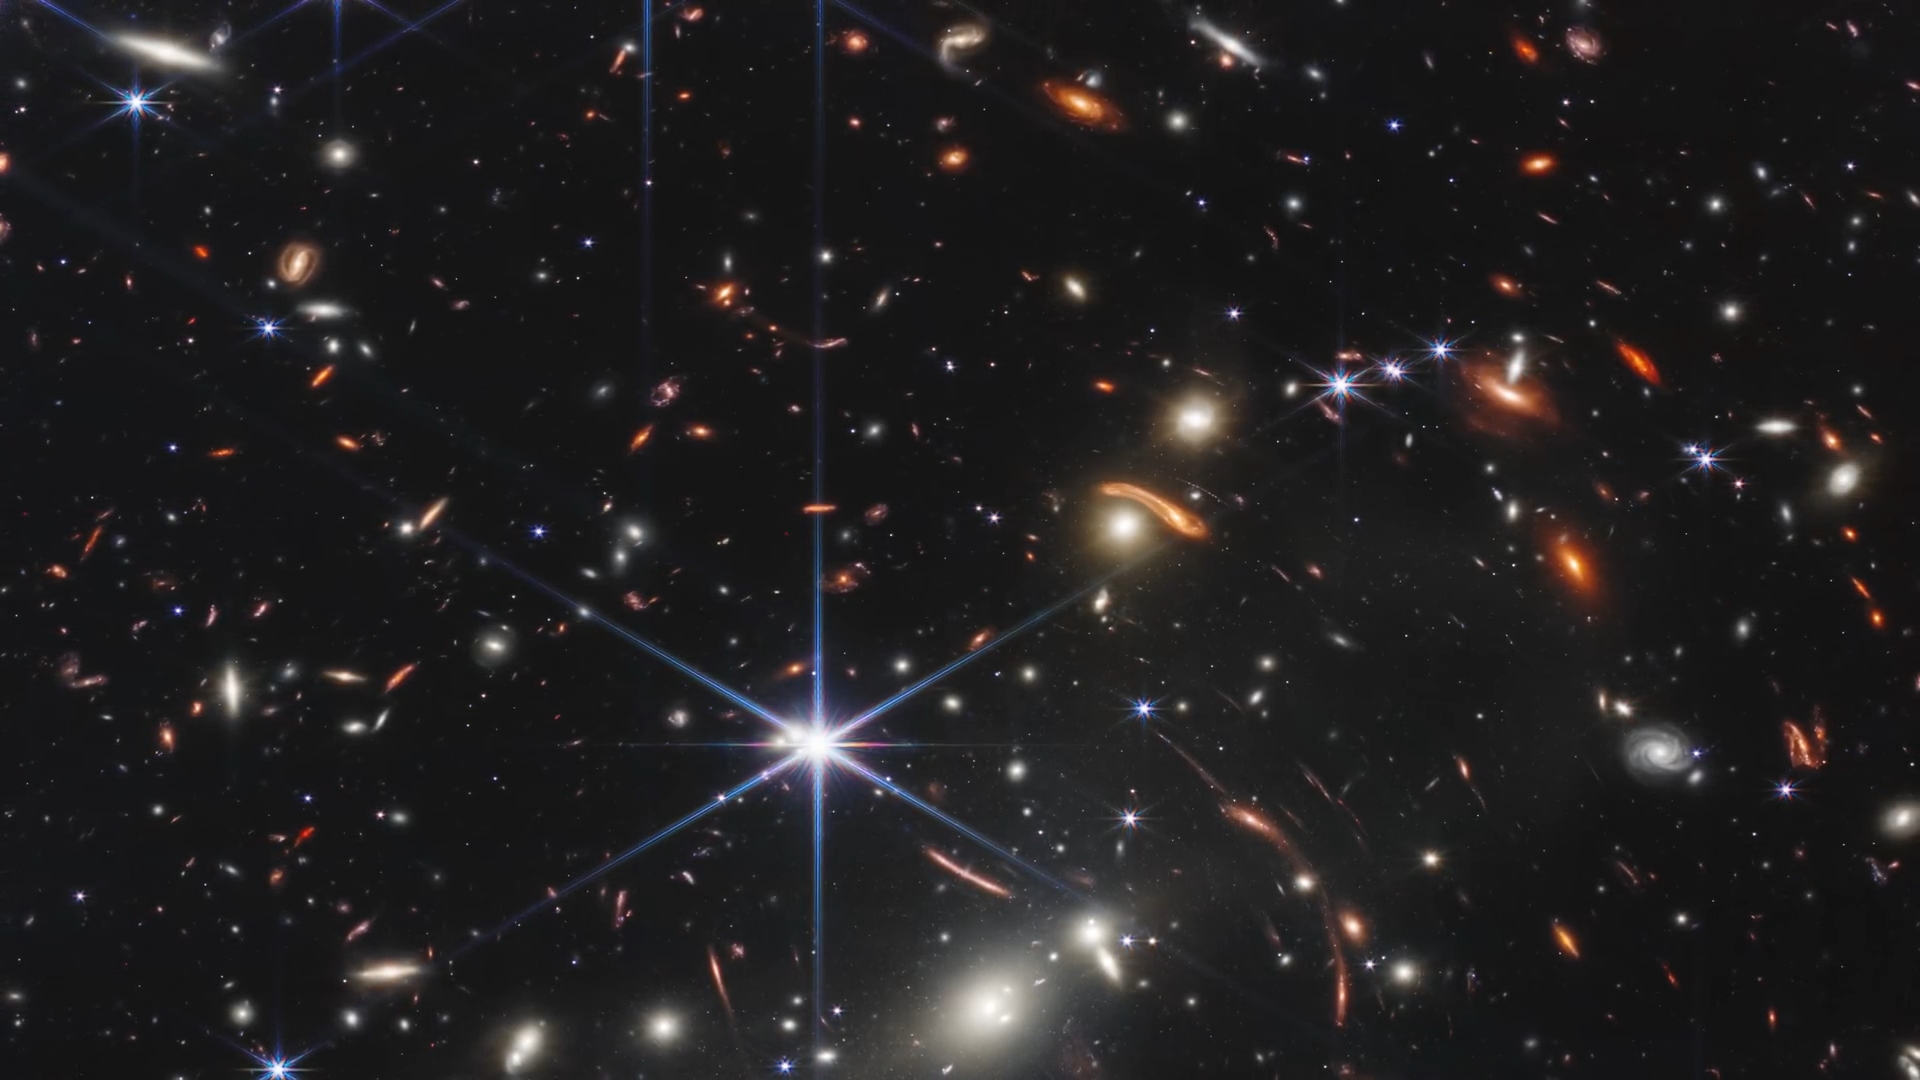 韋布望遠鏡所拍攝的深層次宇宙圖像